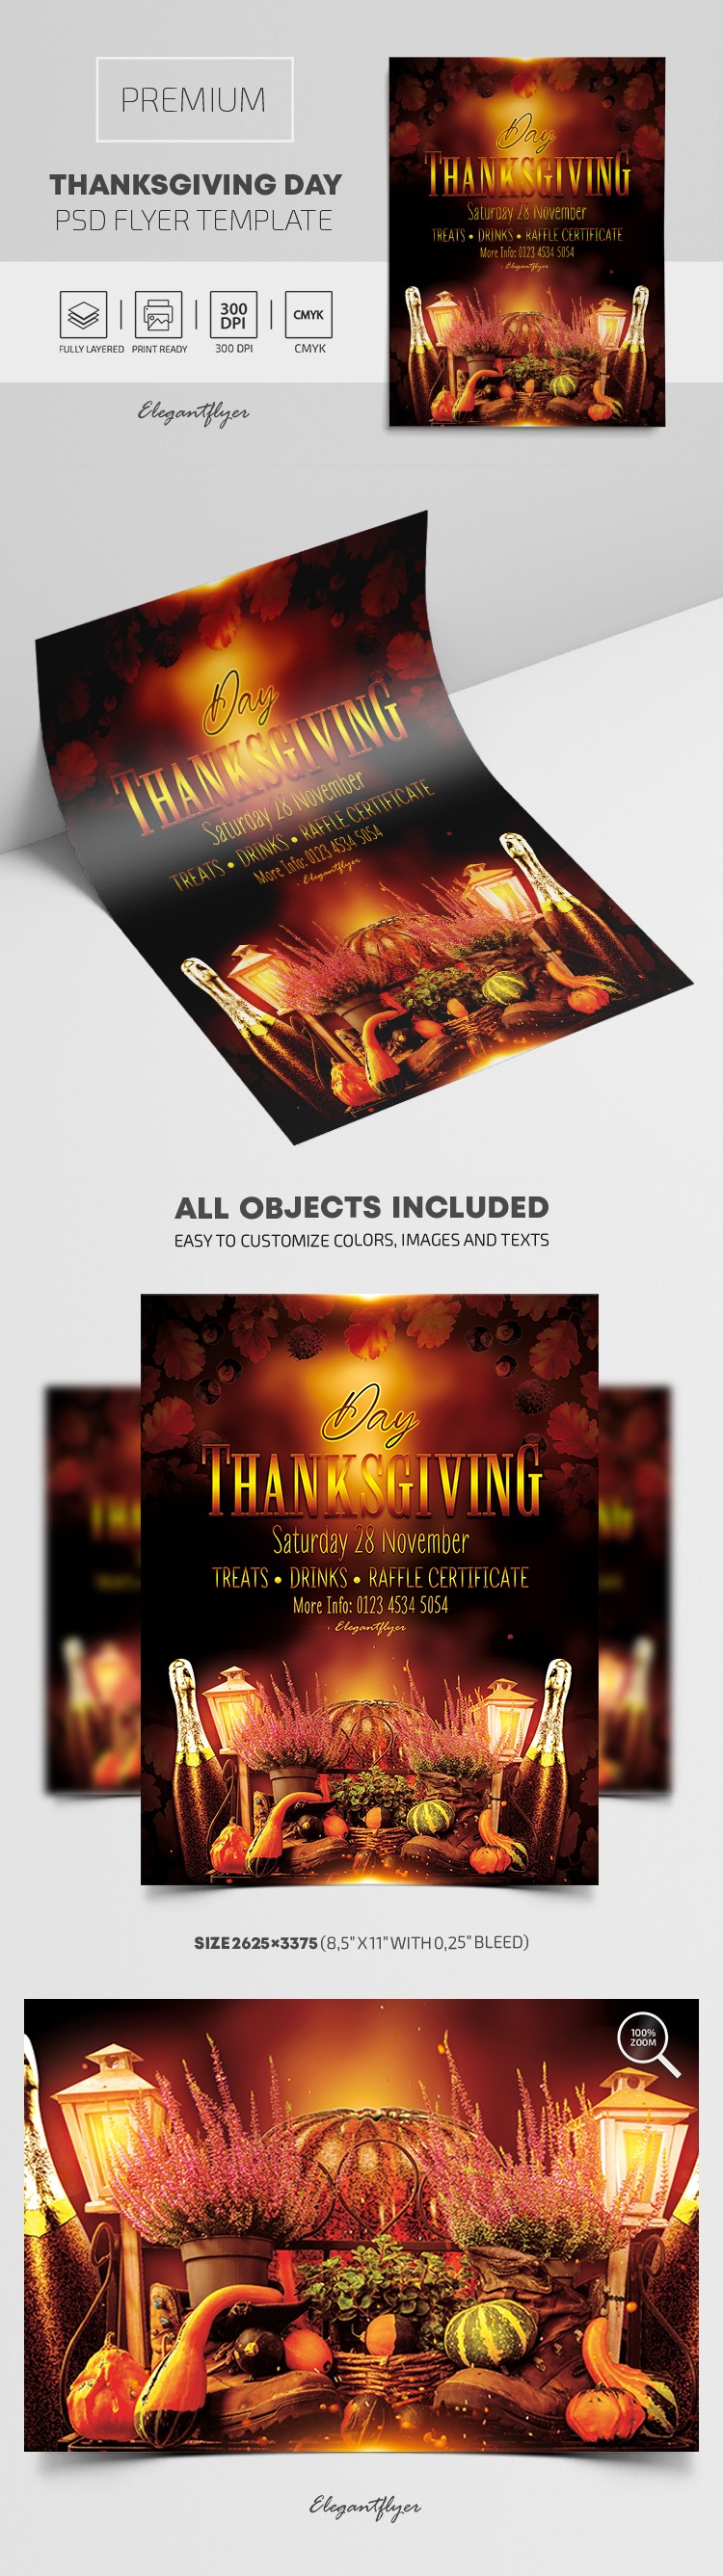 Thanksgiving Day Flyer by ElegantFlyer